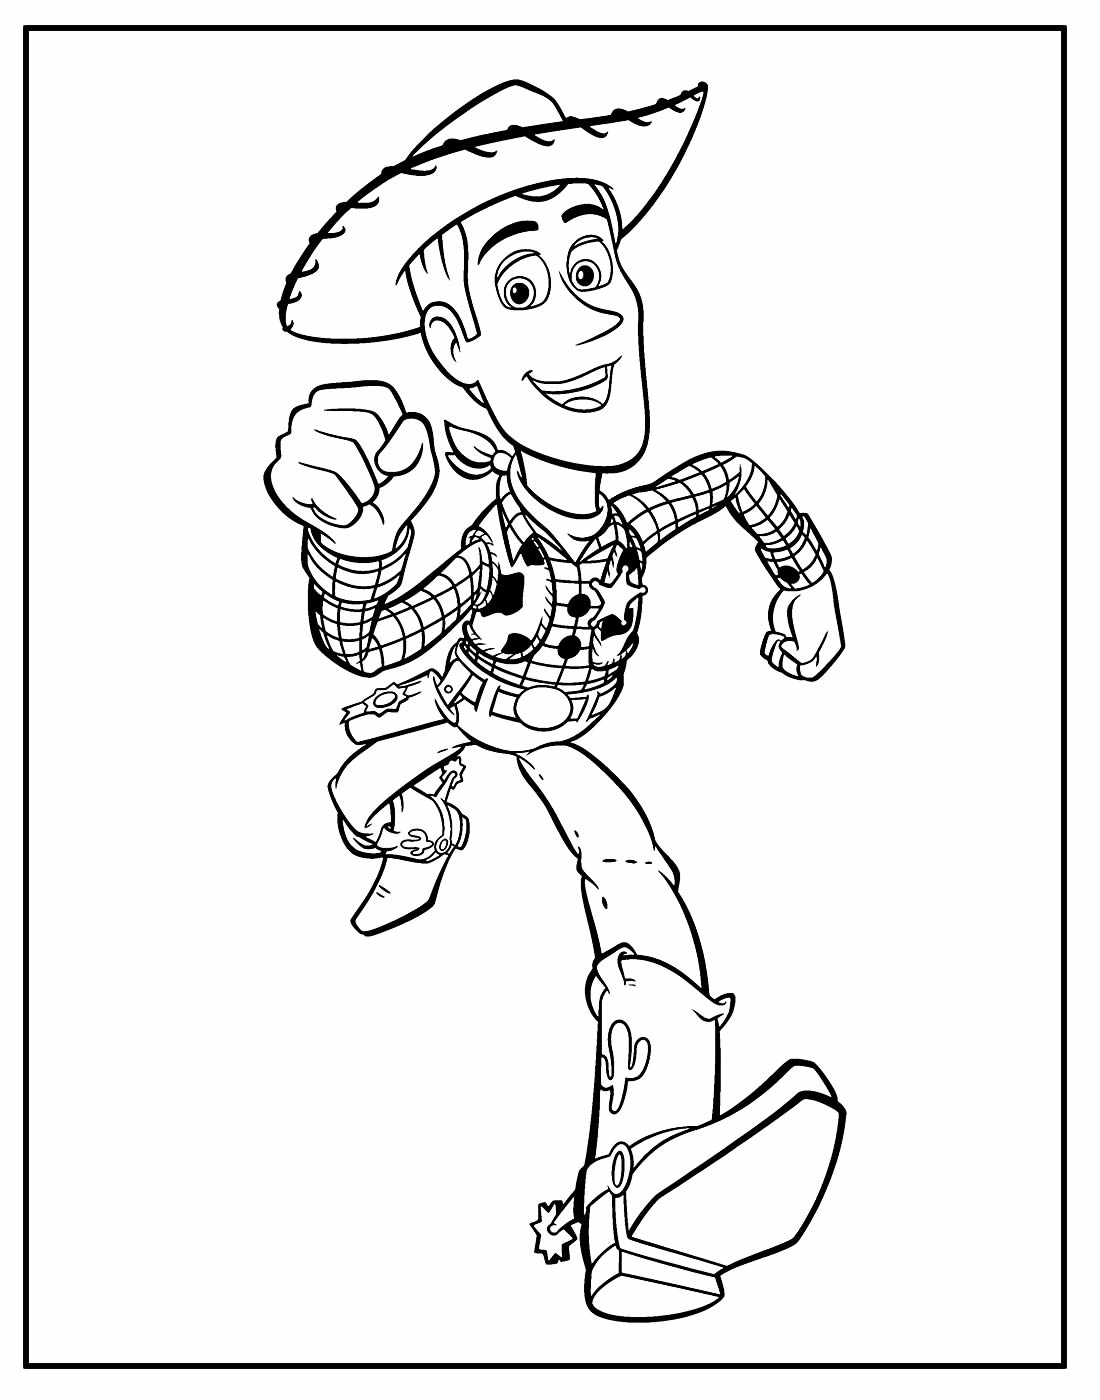 Desenho para colorir de Toy Story